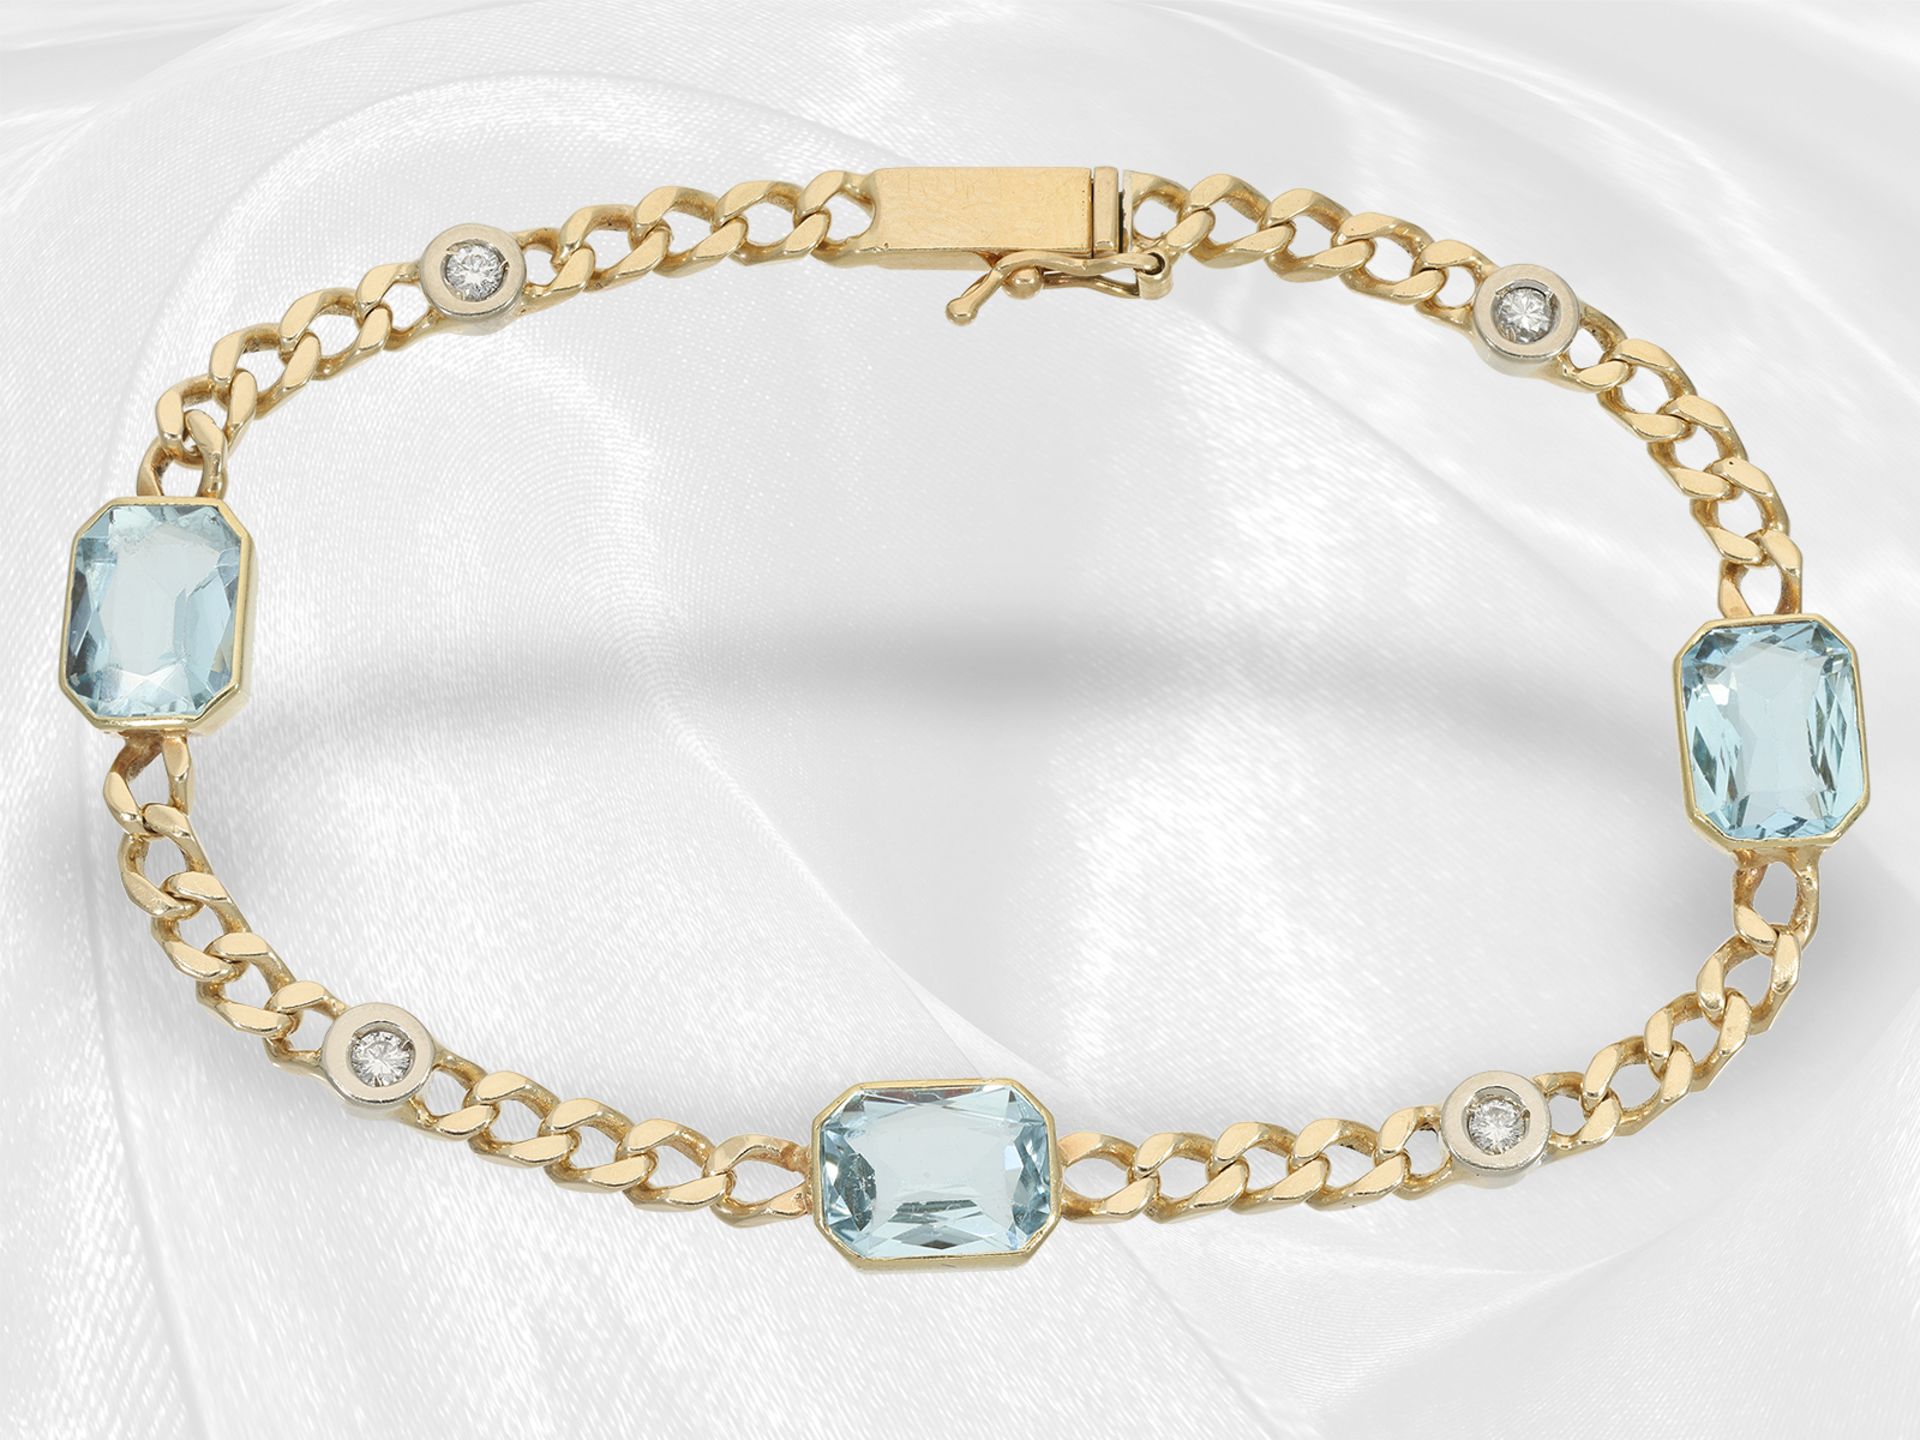 Vintage Goldschmiede-Armband mit schönem Aquamarin- und Brillantbesatz, 14K Gold